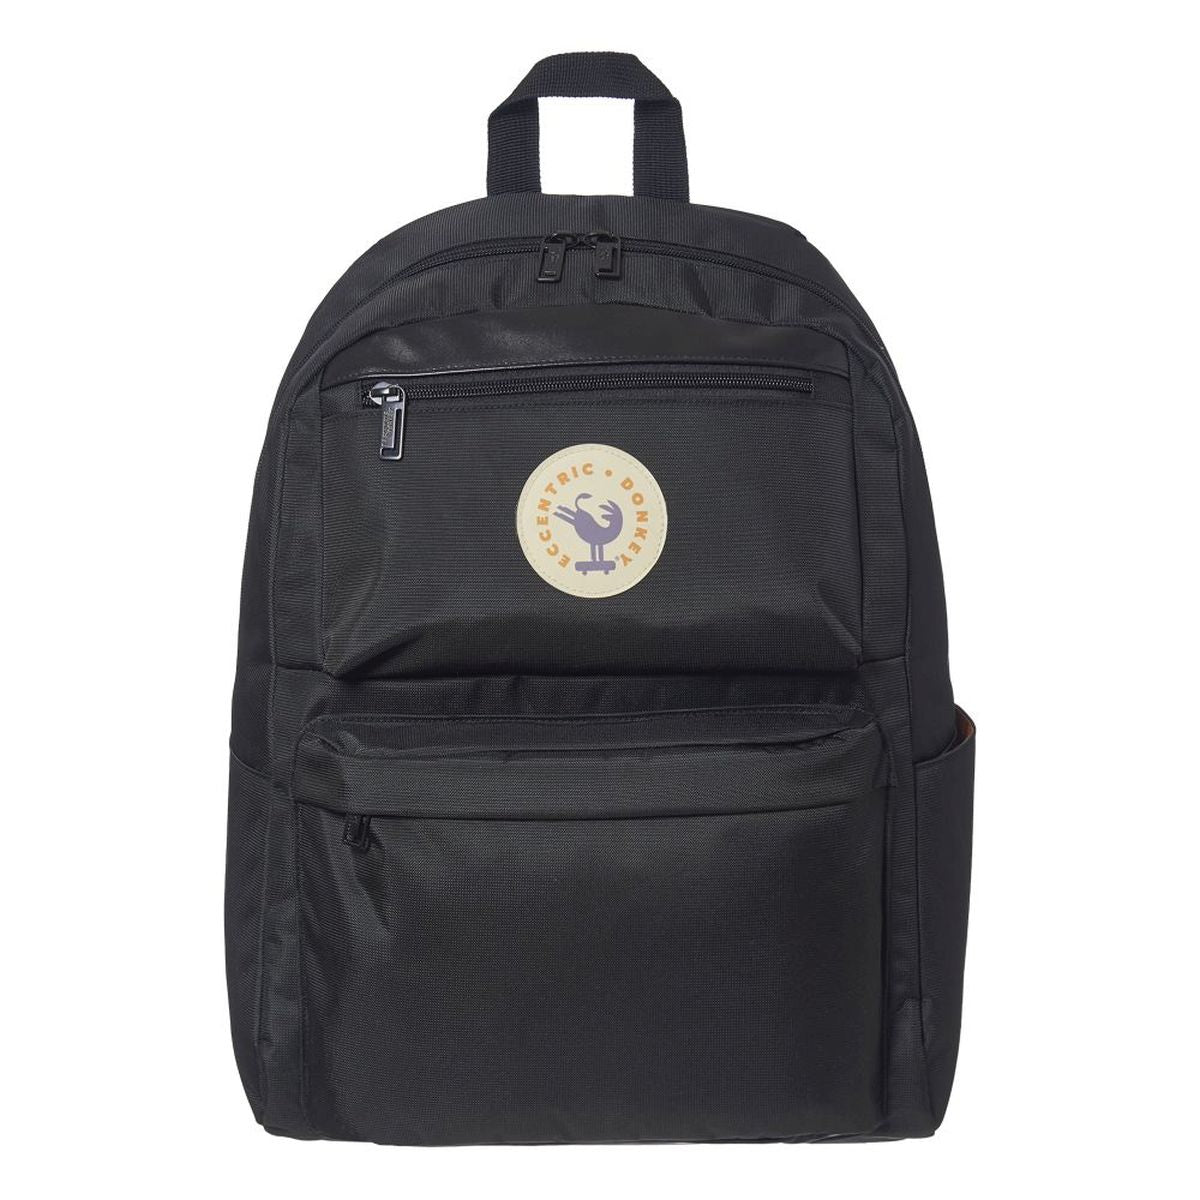 Backpack Mallorquin Basic Black